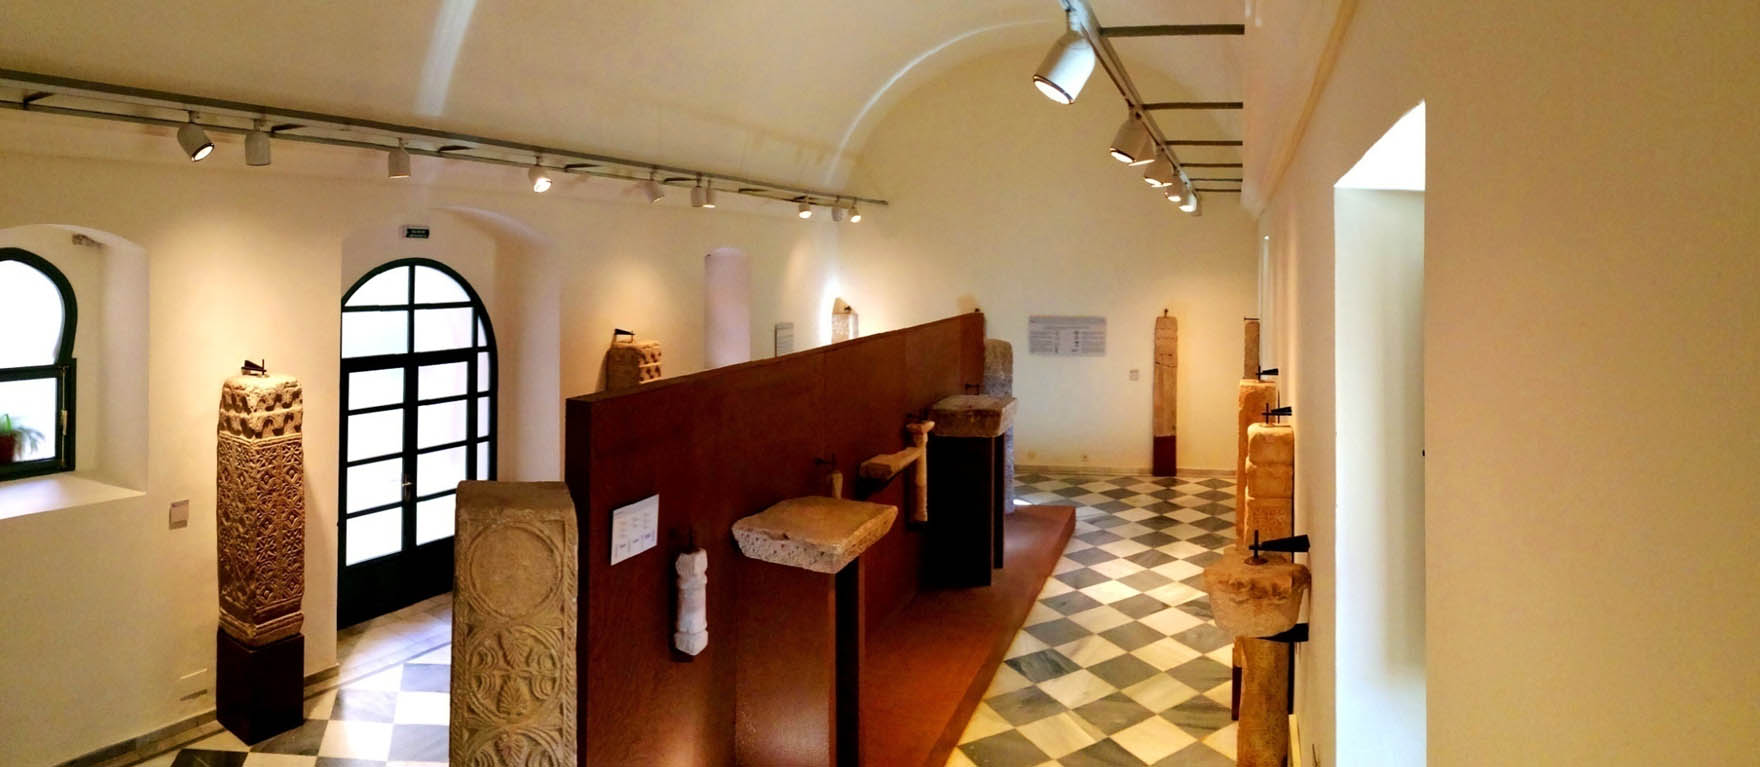 Lámina 19. Sala abovedada de la planta baja del Museo Arqueológico Provincial de Badajoz